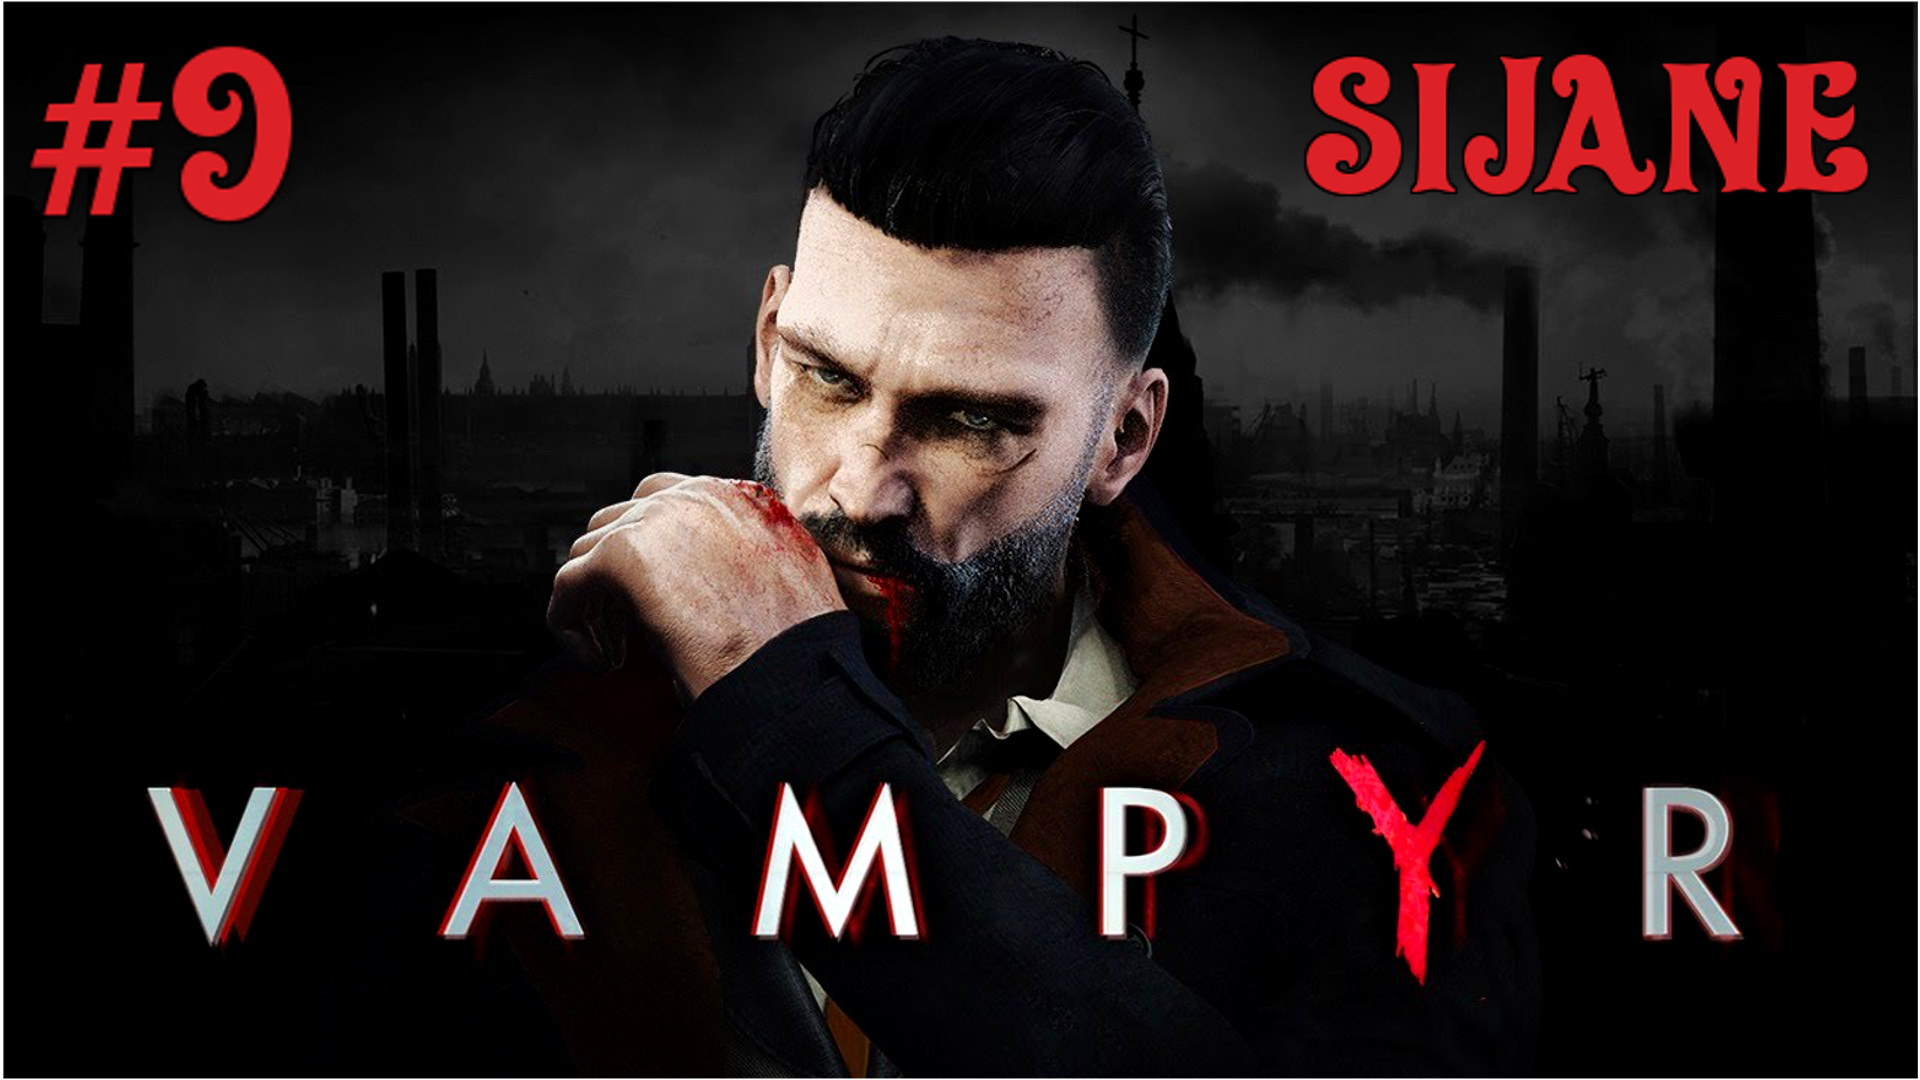 Vampyr #9